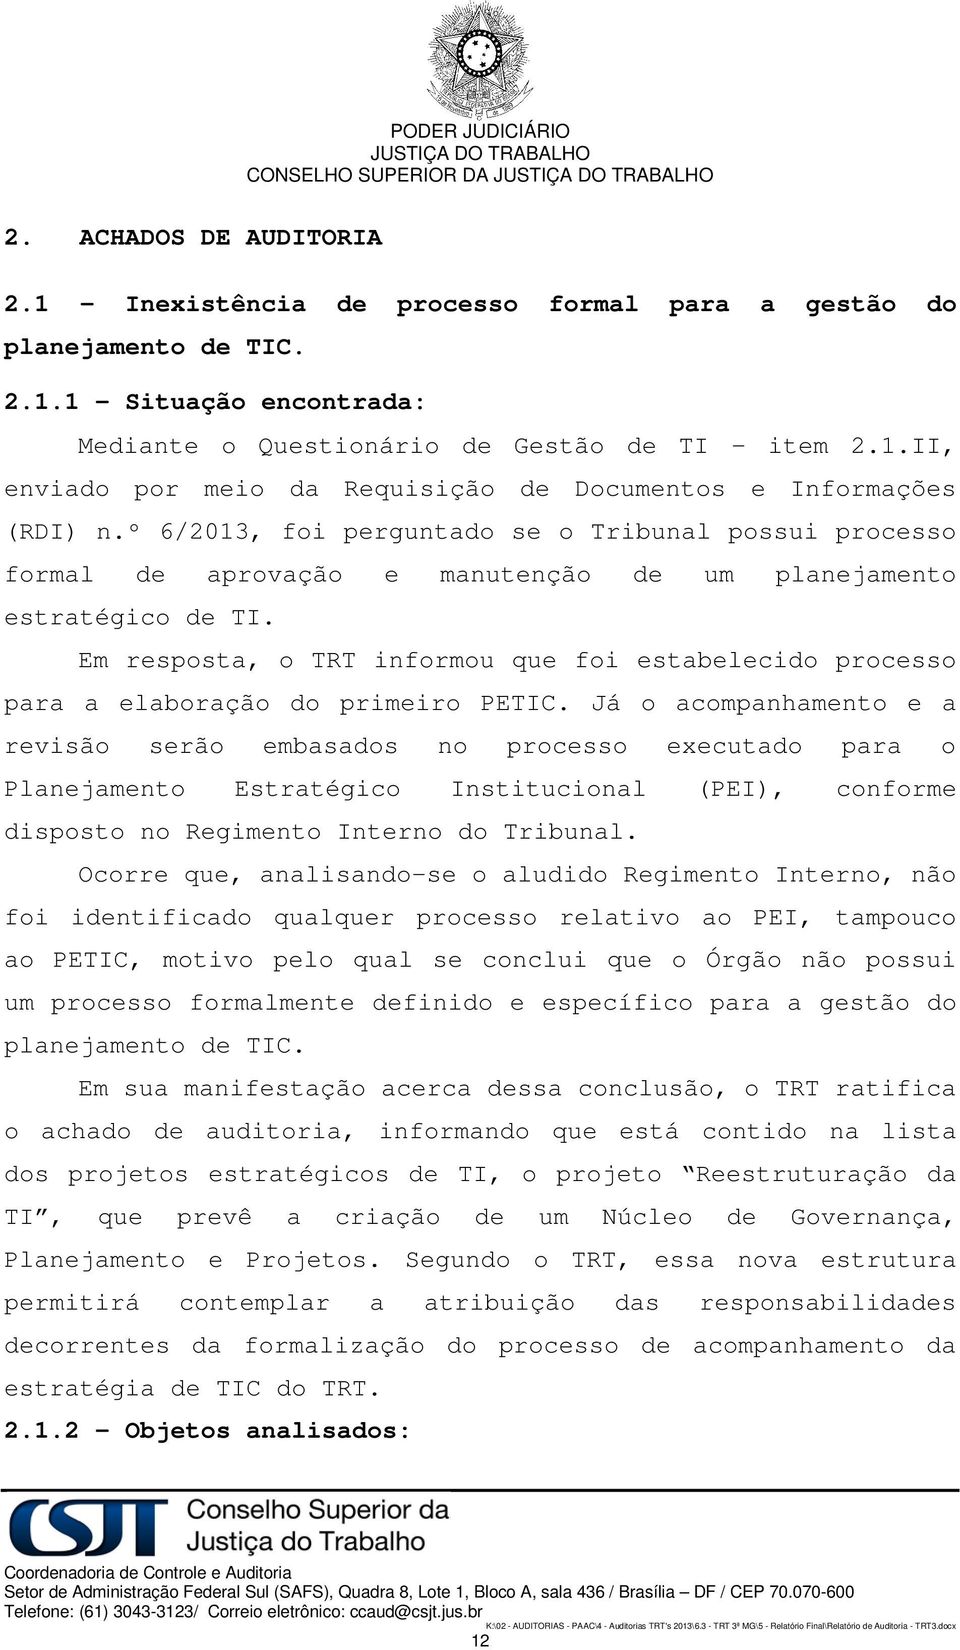 Em resposta, o TRT informou que foi estabelecido processo para a elaboração do primeiro PETIC.